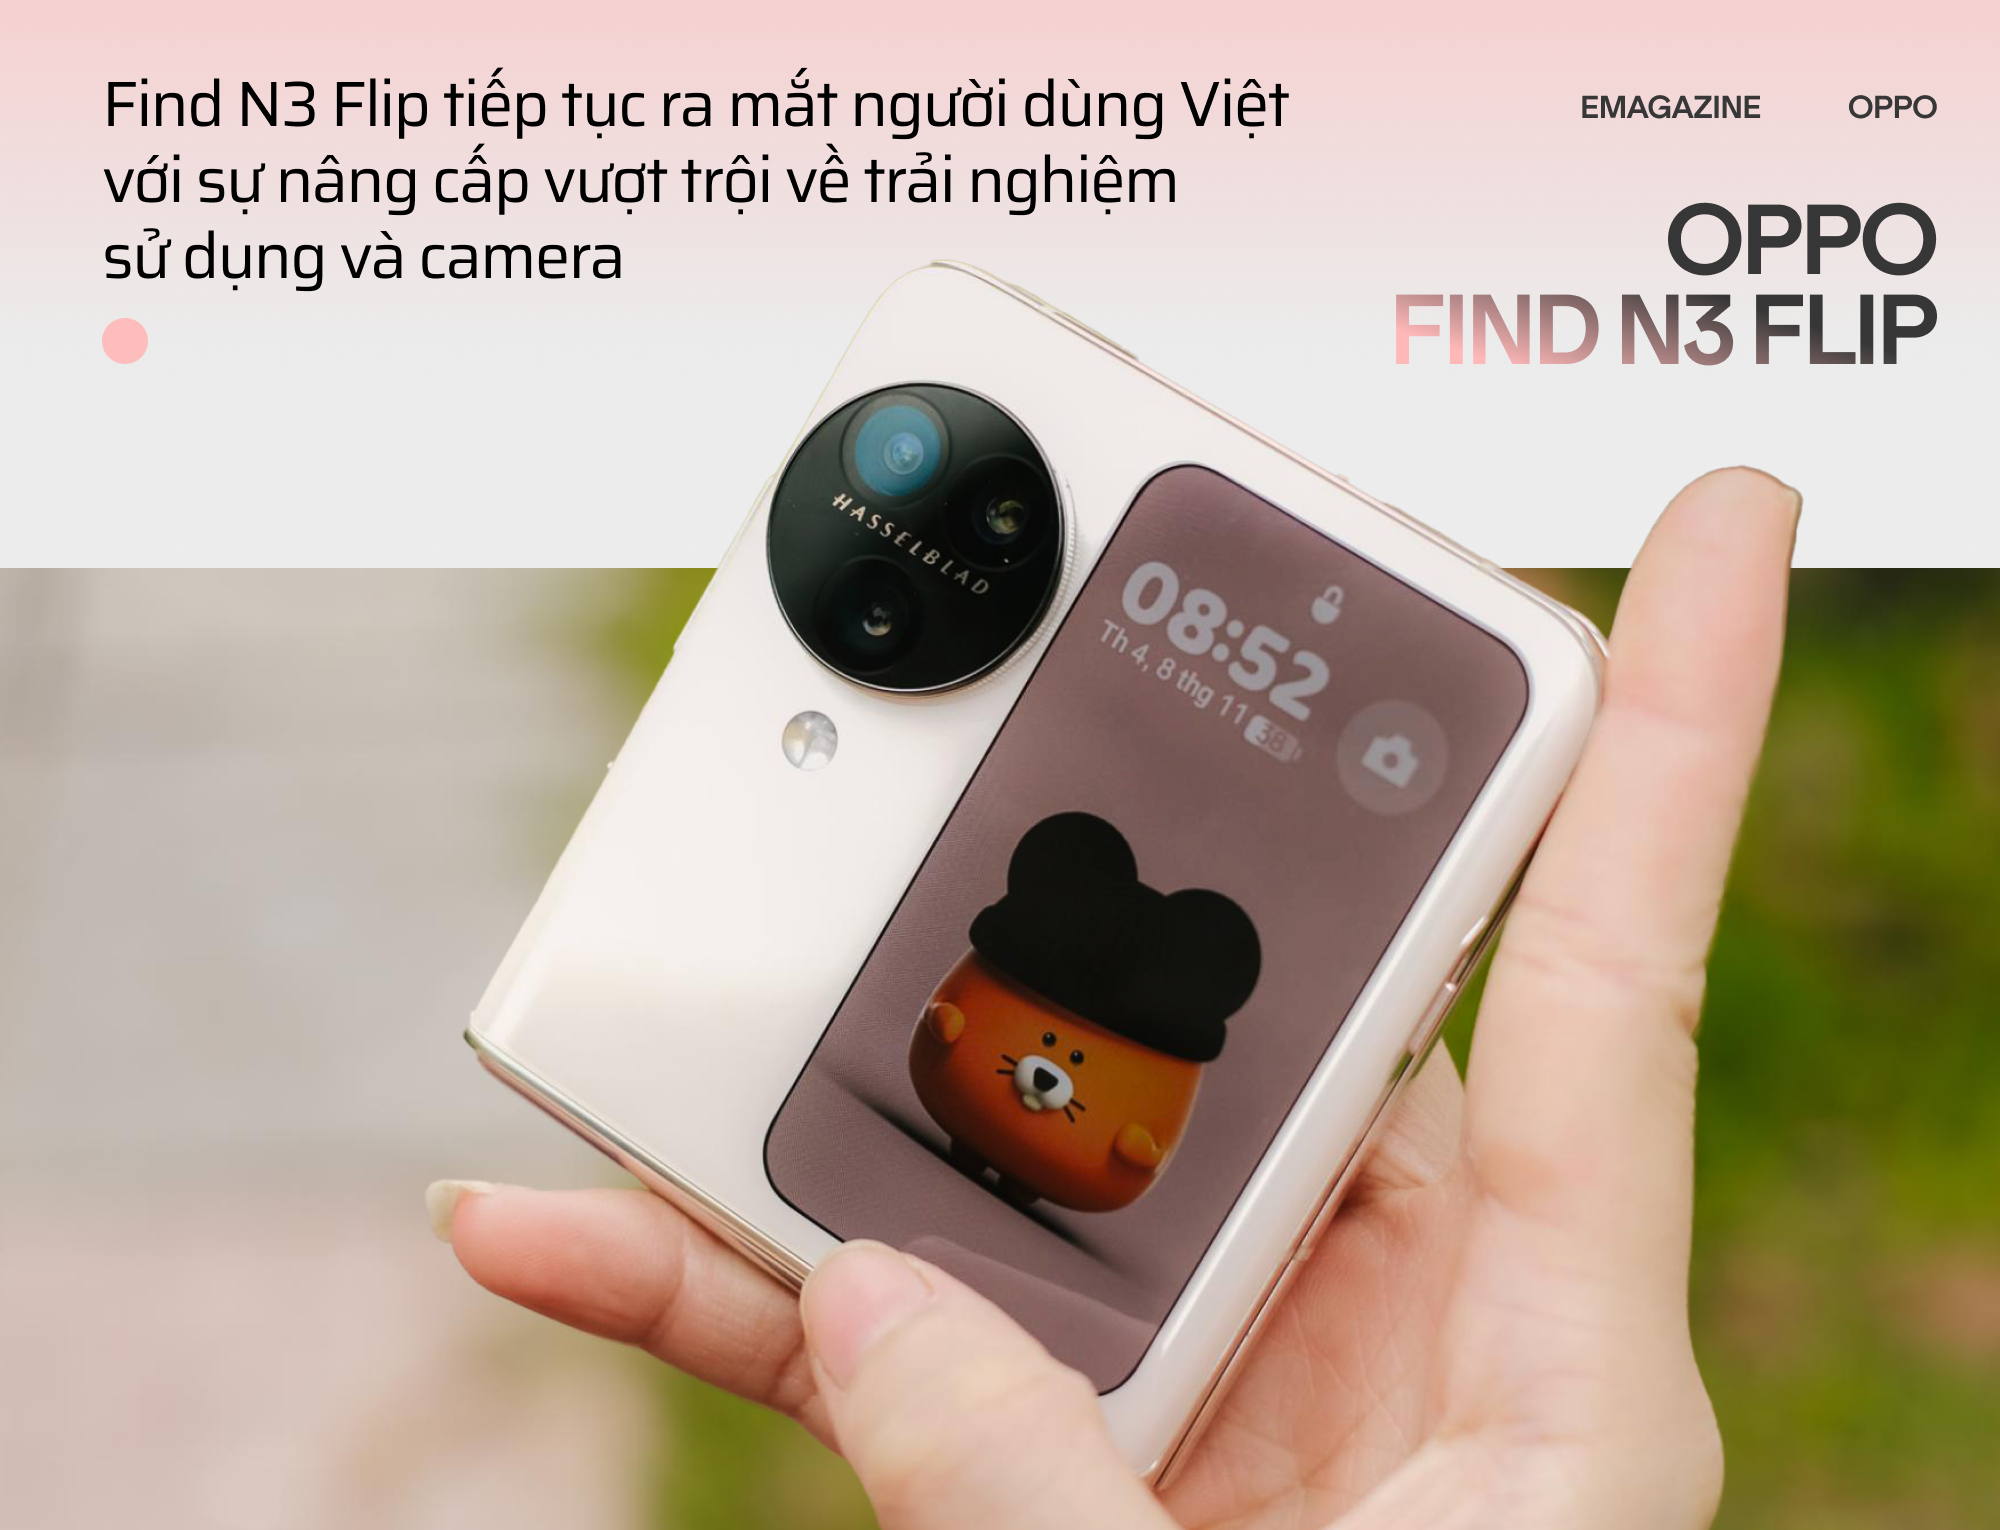 OPPO Find N3 Flip và hành trình đi tìm chiếc smartphone gập toàn diện - Ảnh 1.